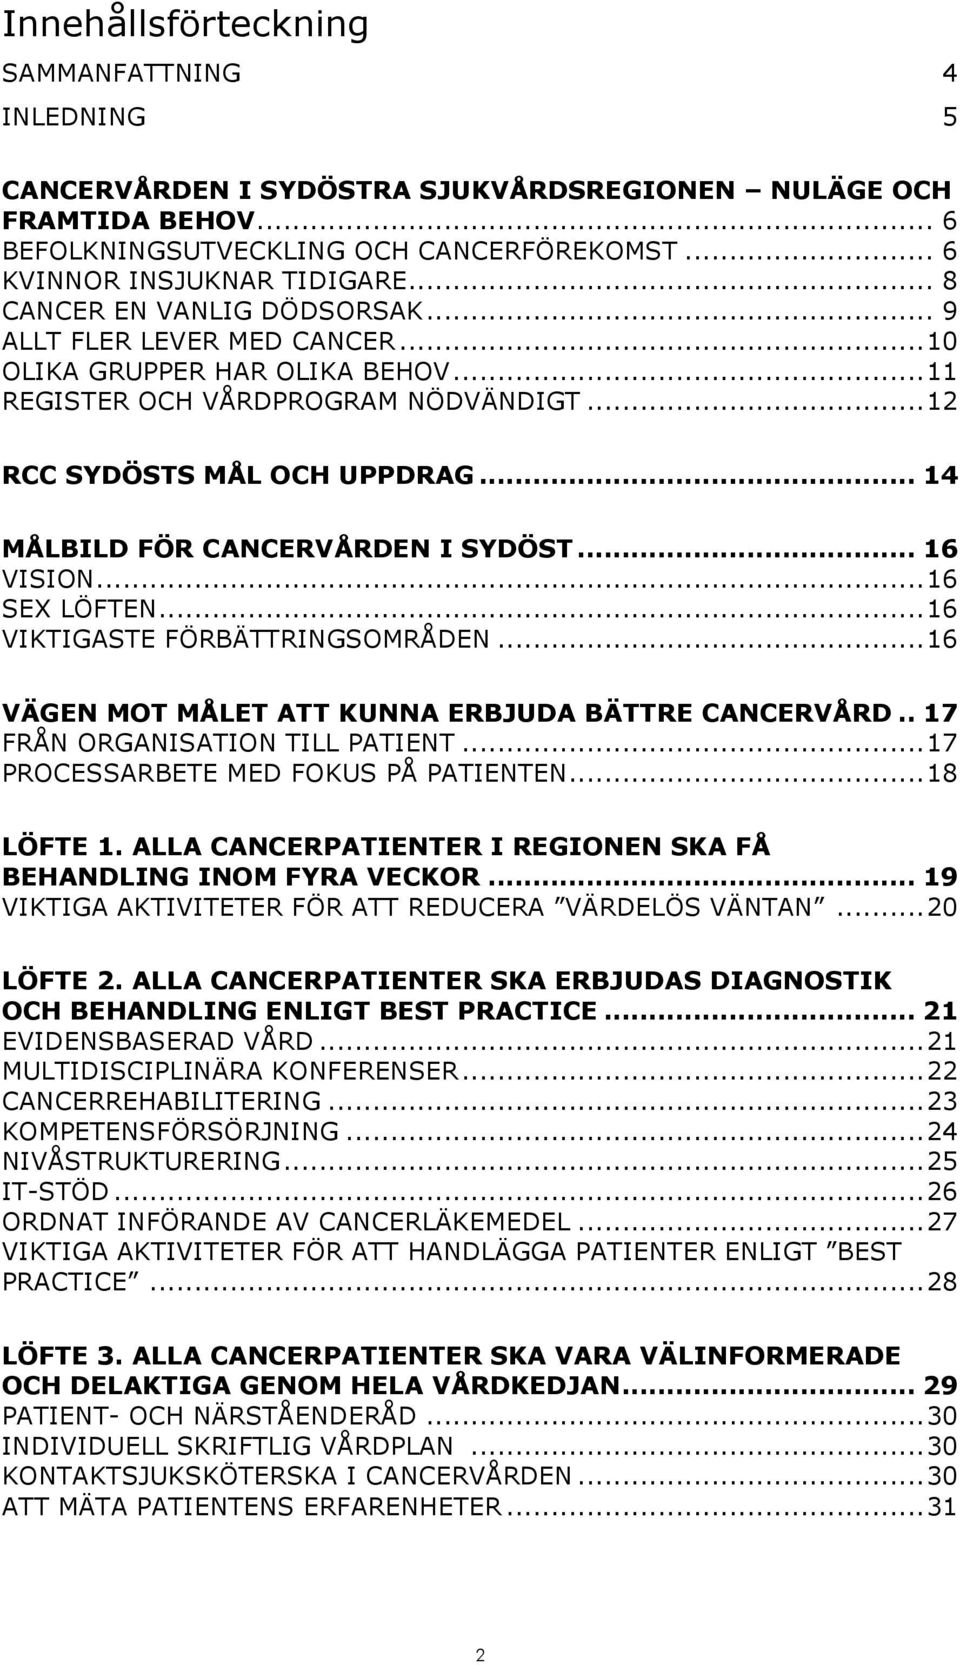 .. 14 MÅLBILD FÖR CANCERVÅRDEN I SYDÖST... 16 VISION... 16 SEX LÖFTEN... 16 VIKTIGASTE FÖRBÄTTRINGSOMRÅDEN... 16 VÄGEN MOT MÅLET ATT KUNNA ERBJUDA BÄTTRE CANCERVÅRD.. 17 FRÅN ORGANISATION TILL PATIENT.